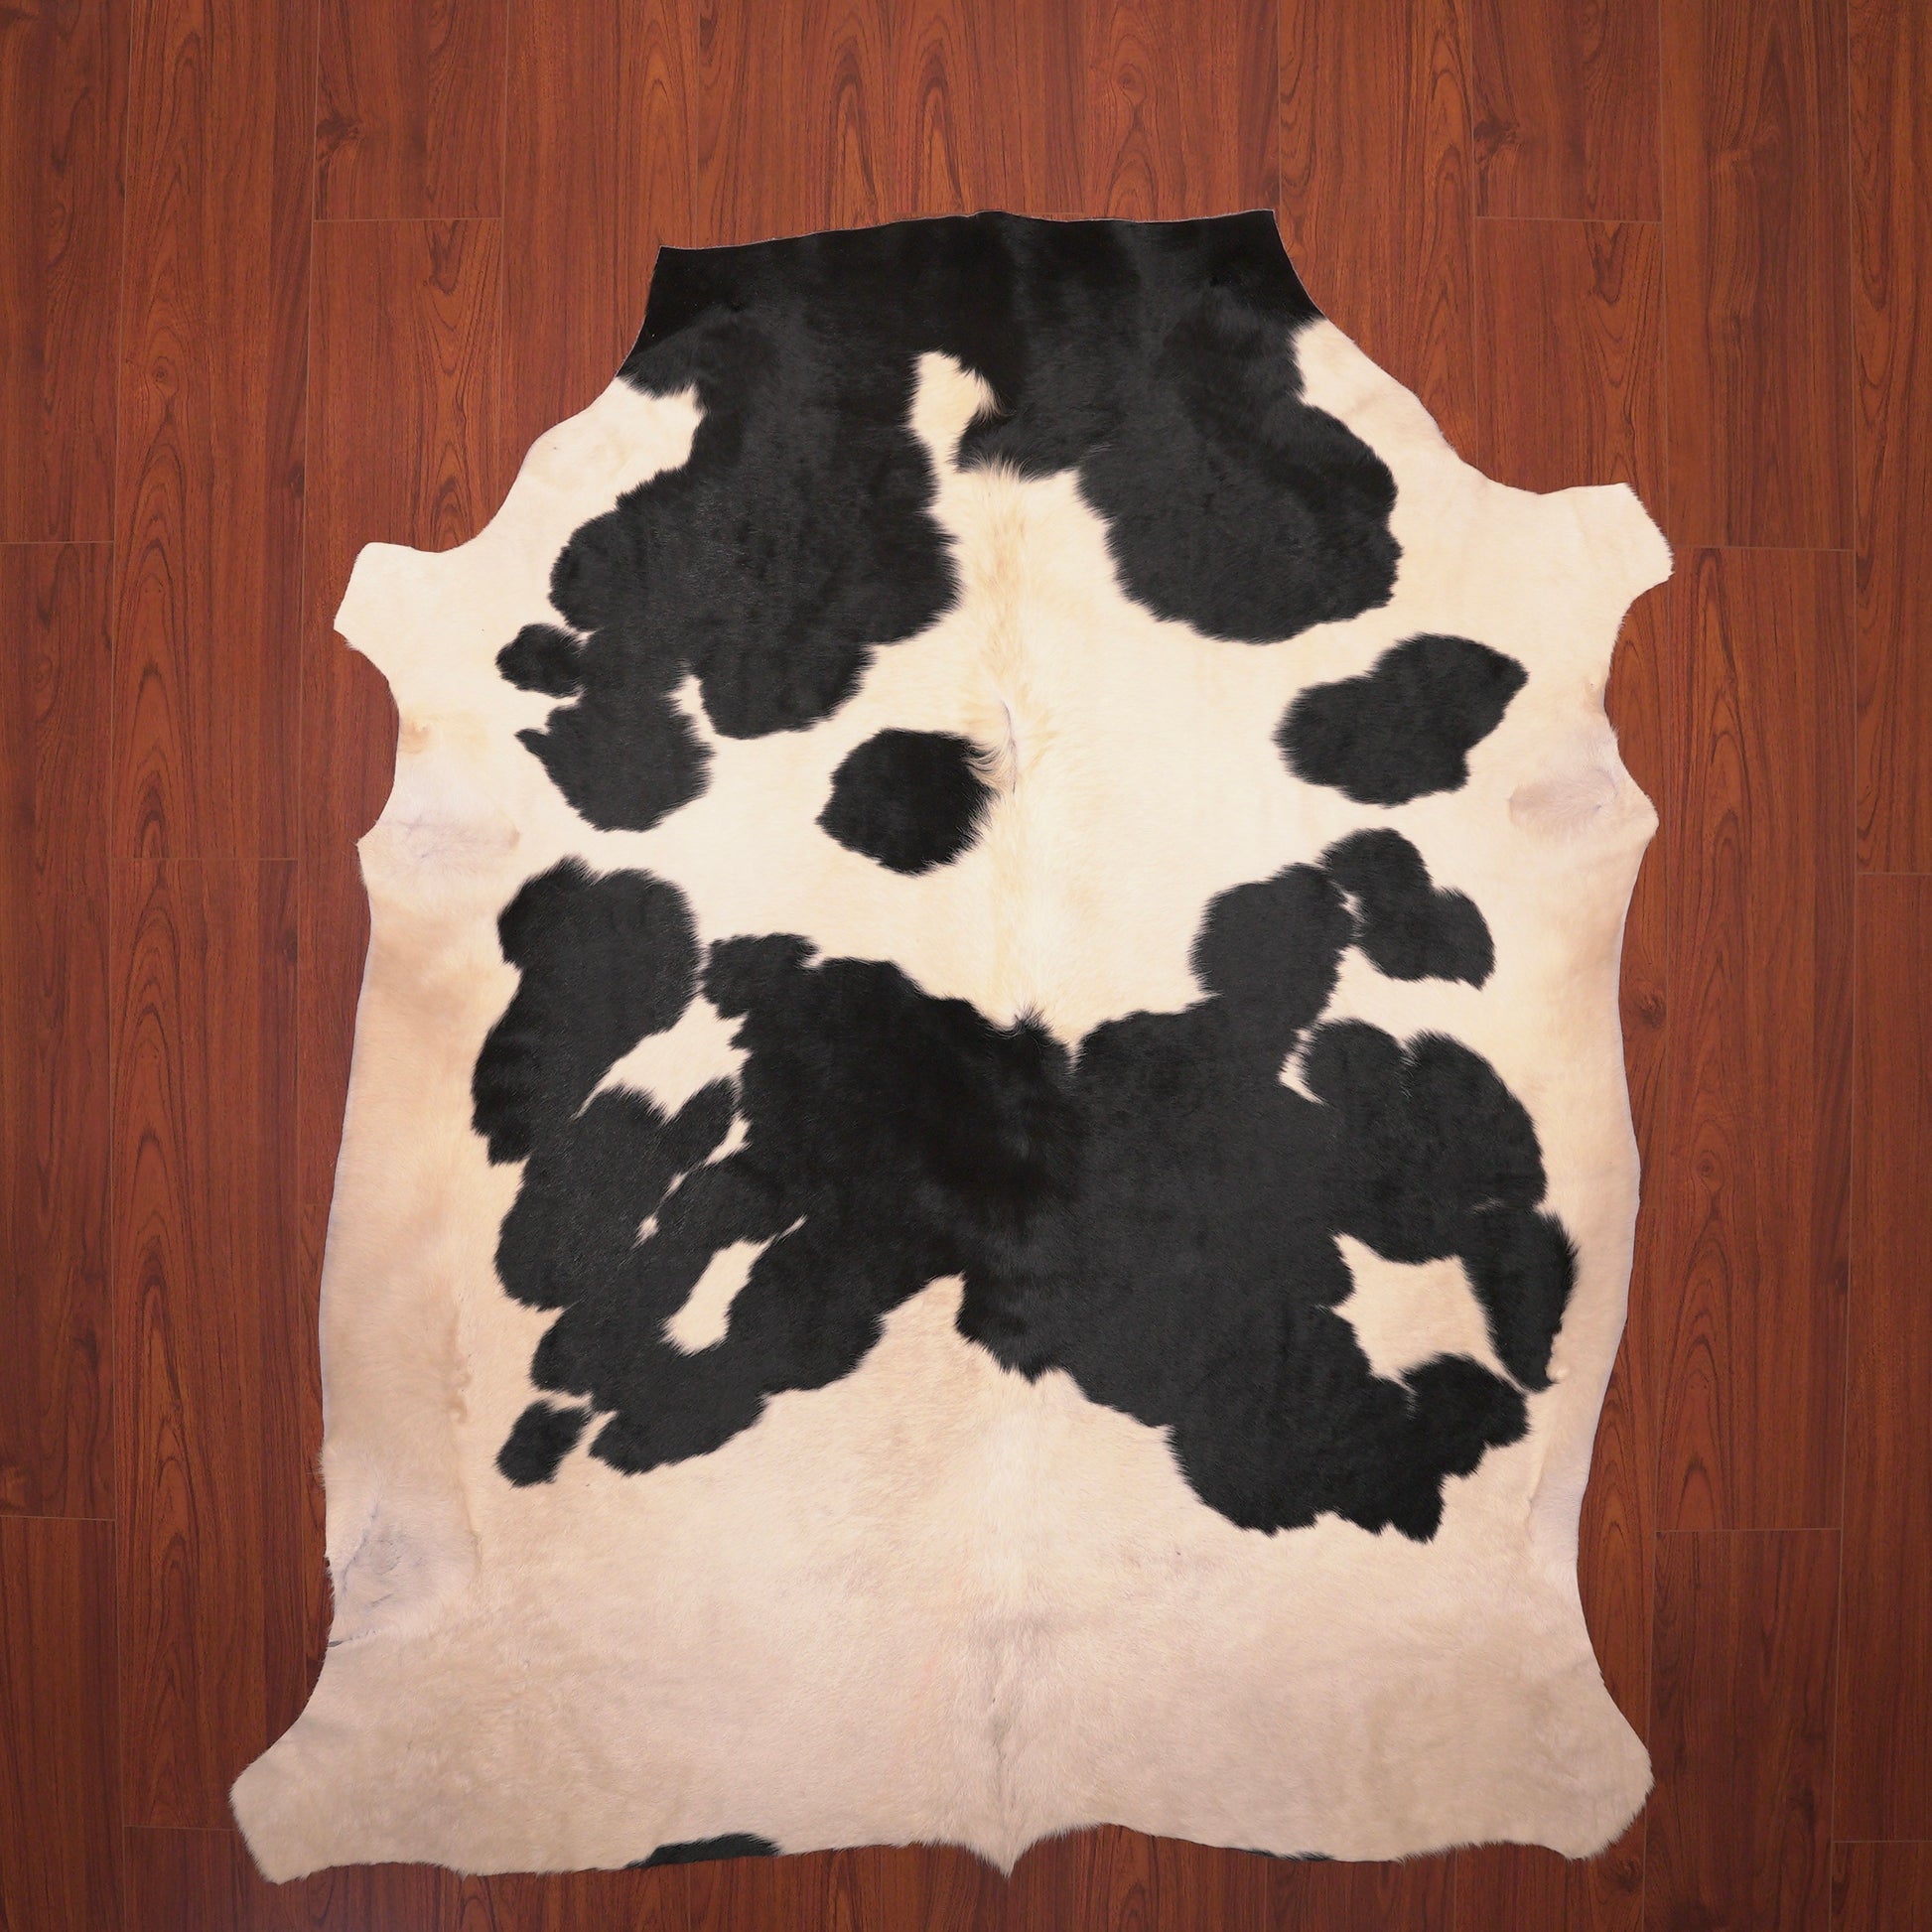 nguni guy cow skin hide rug black and white